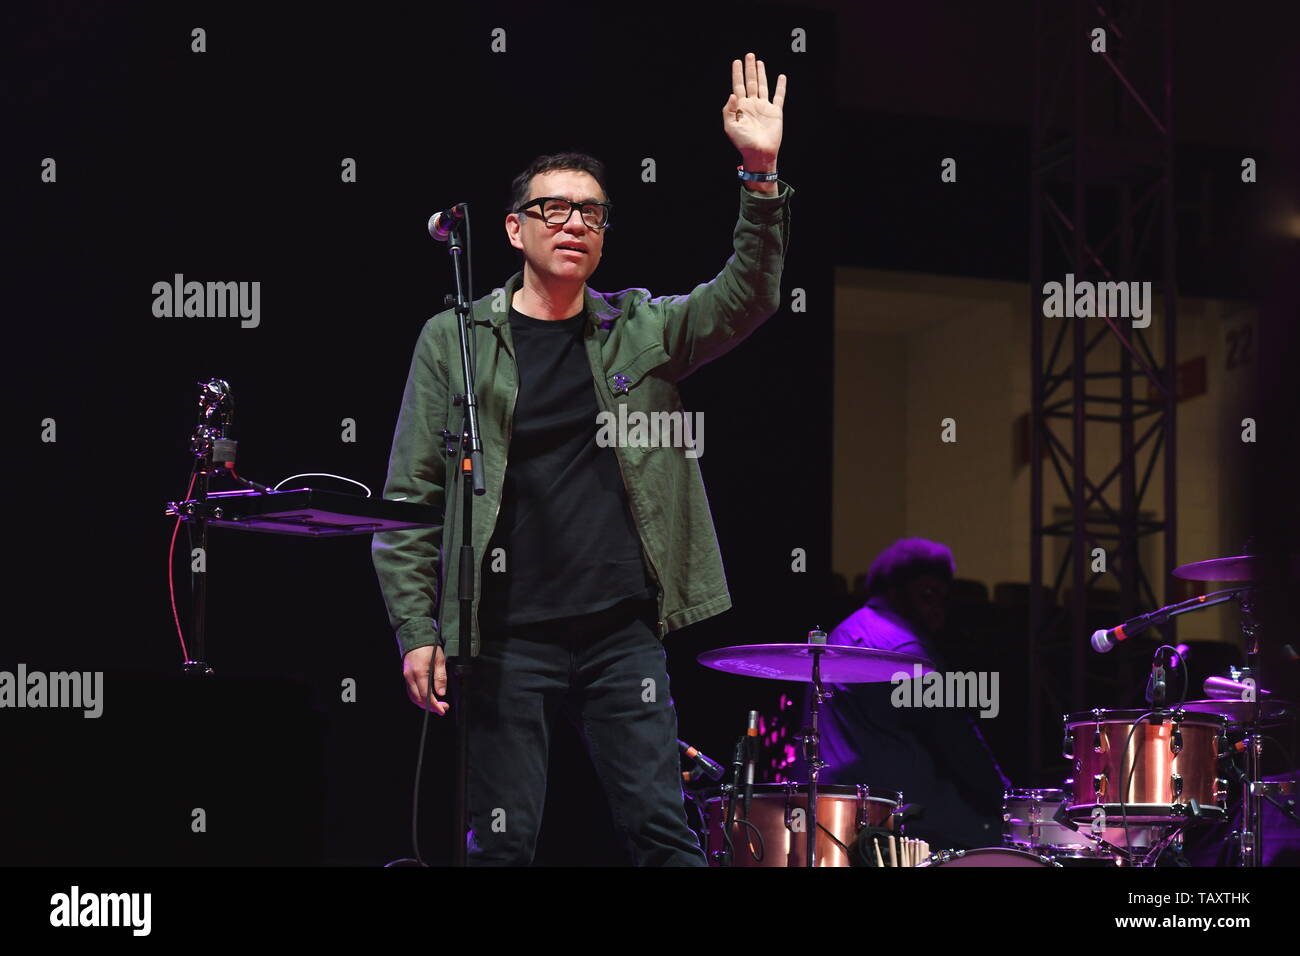 Actor, comediante, escritor, productor y músico Fred Armisen es mostrado en el escenario durante la realización de un 'live' Stand up concierto apariencia. Foto de stock